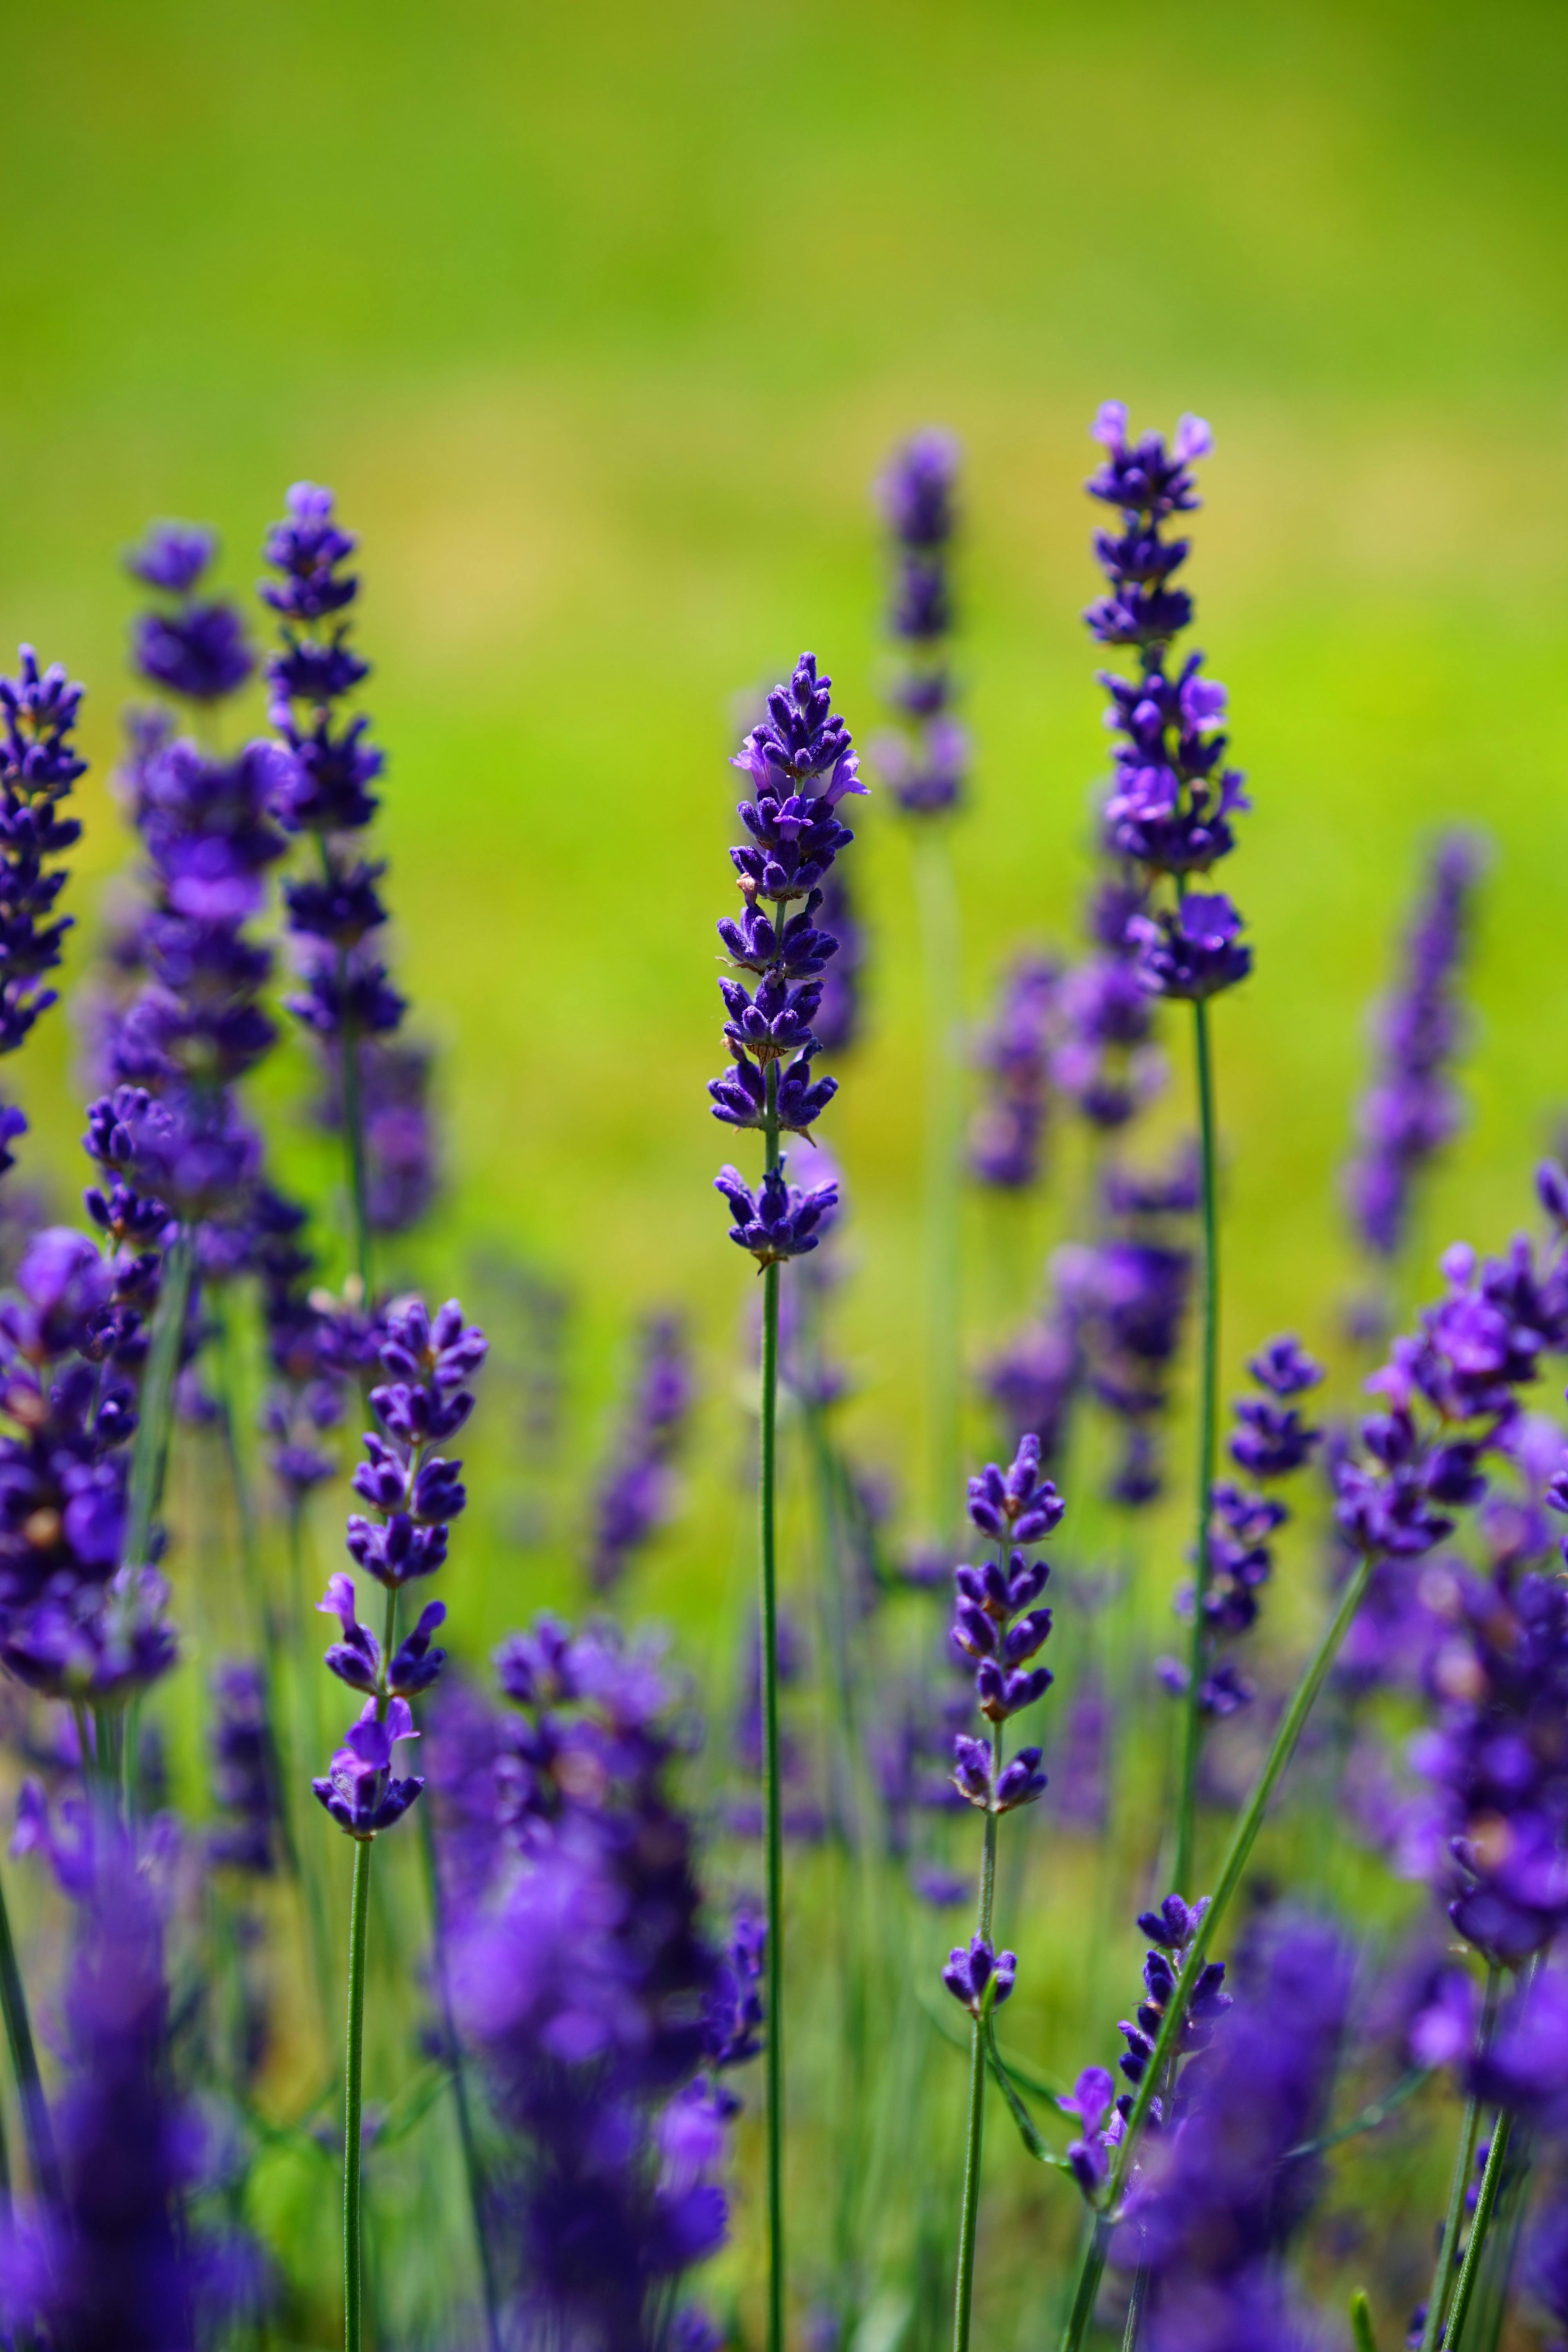 Wallpaper ID 10315  lavender flowers field purple bloom 4k free  download